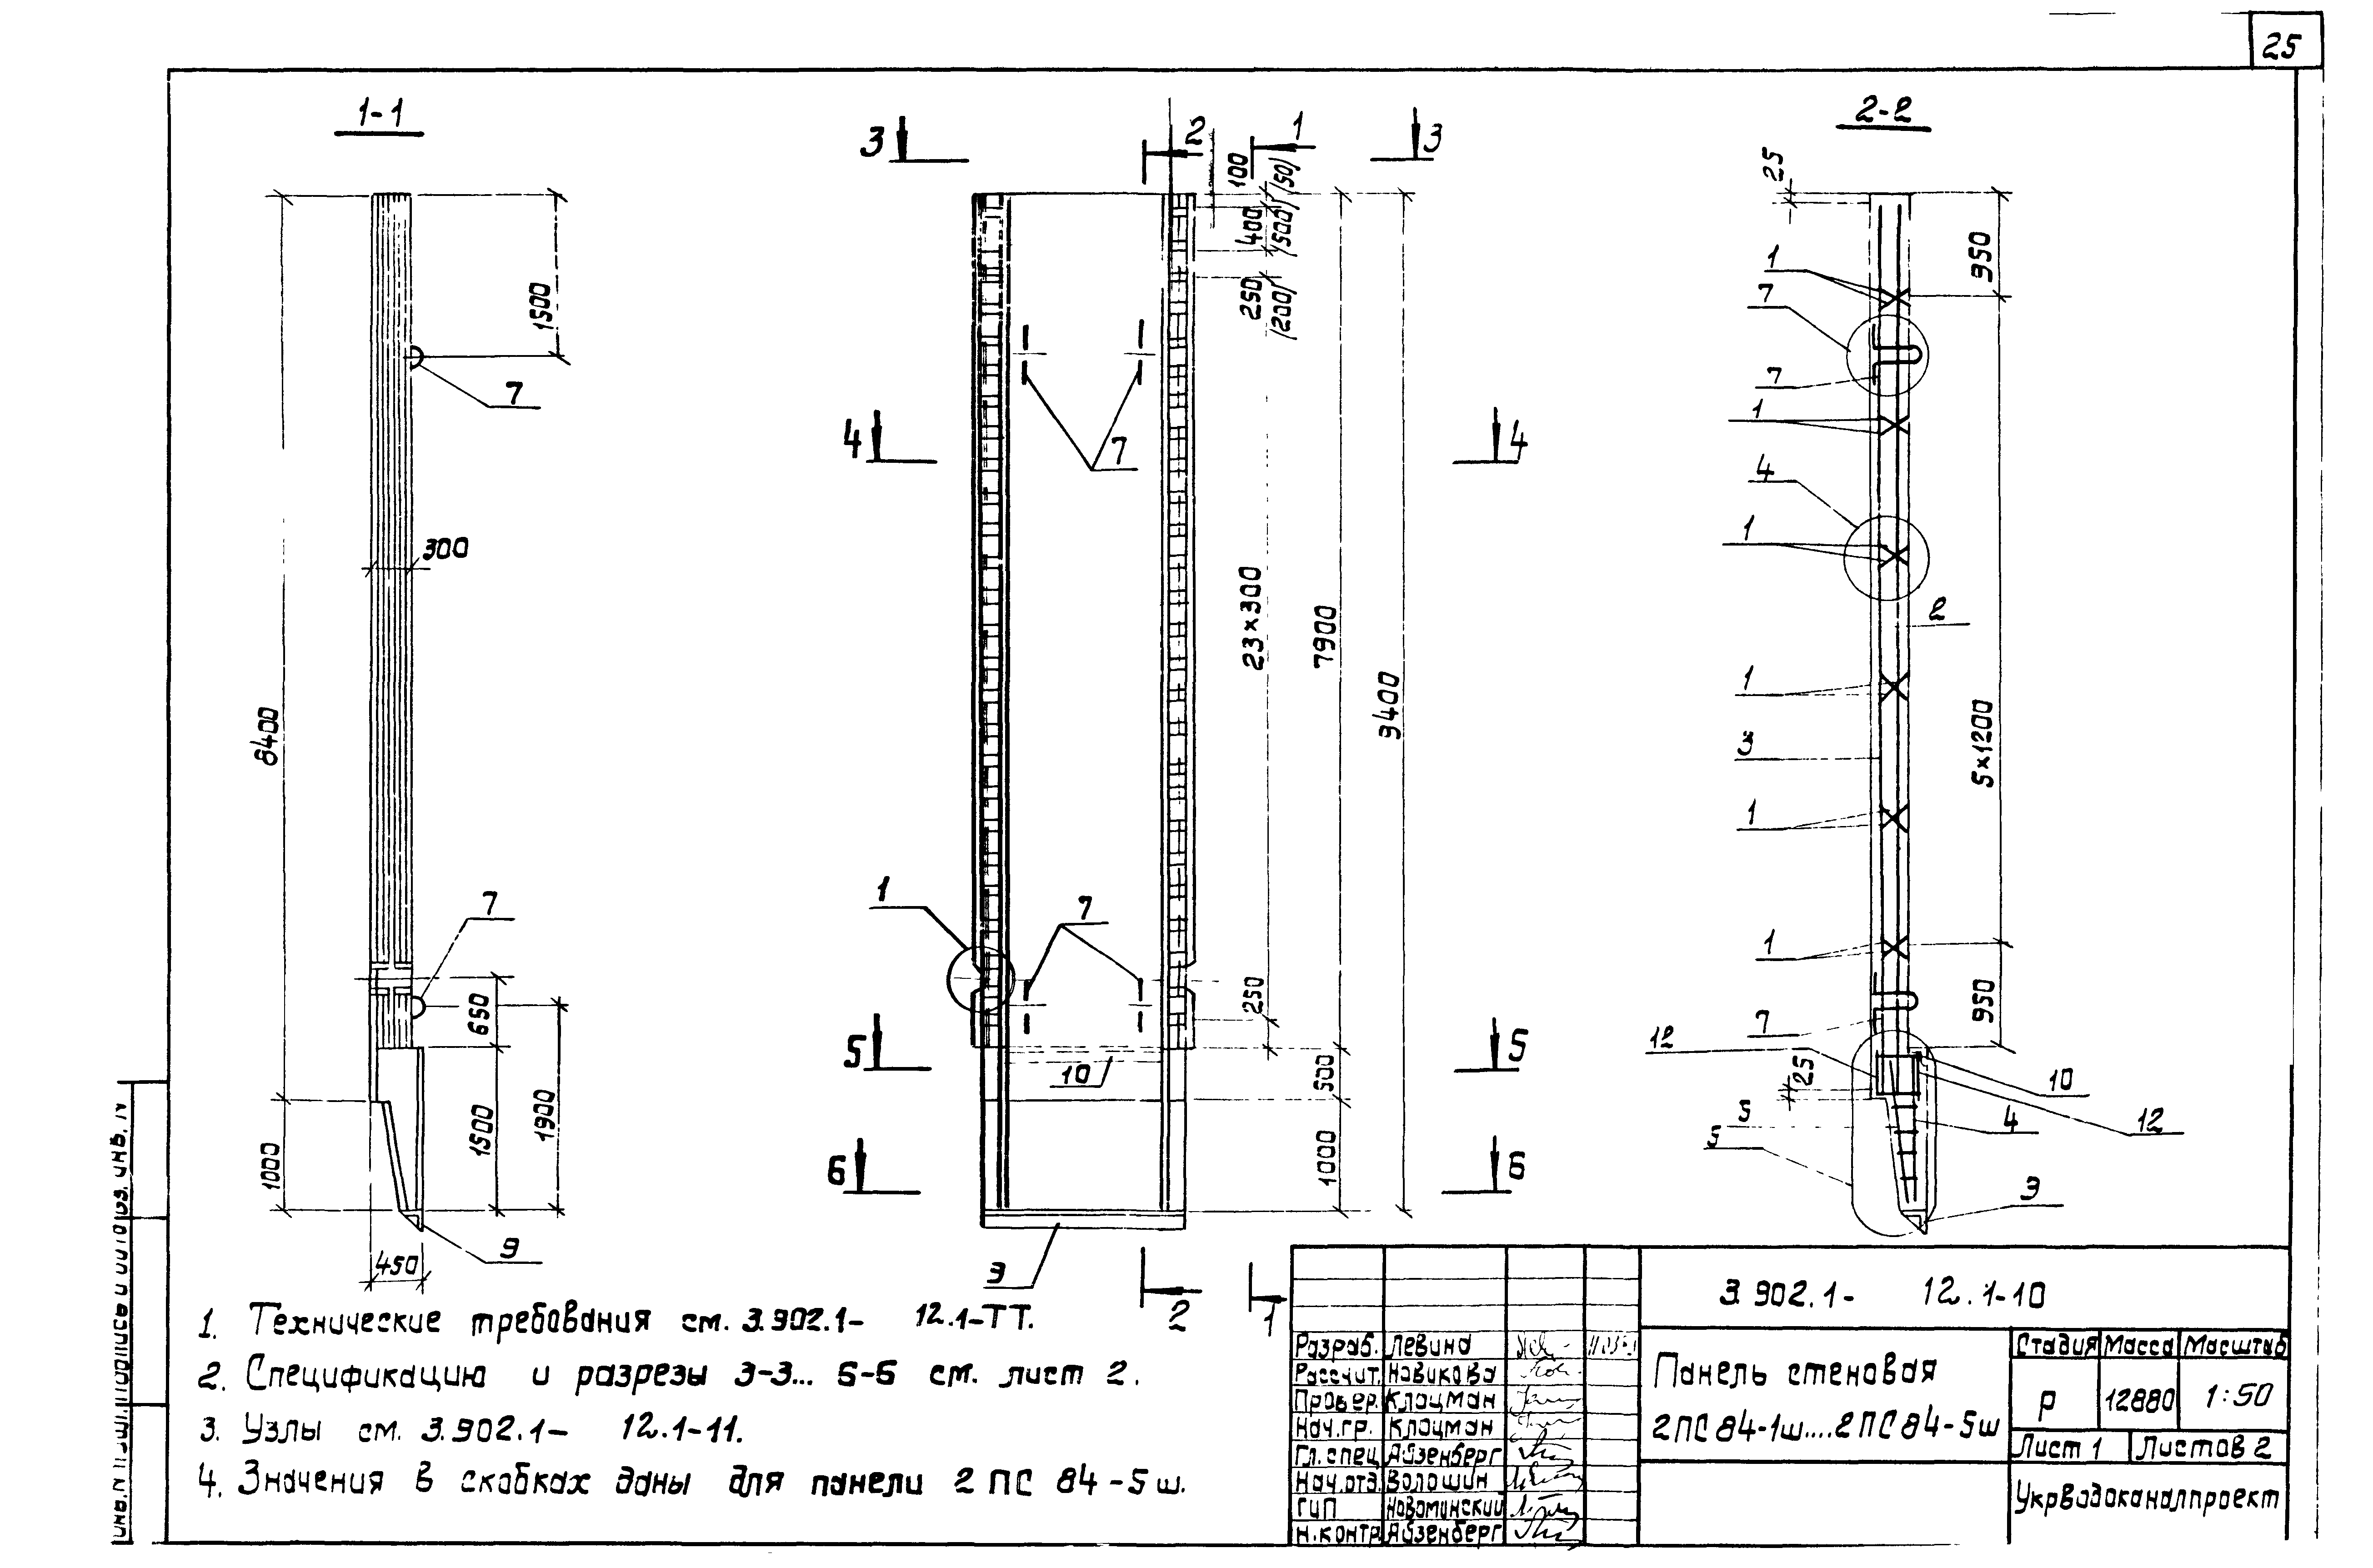 Панель стеновая 2ПС84-1ш Серия 3.902.1-12, вып.1